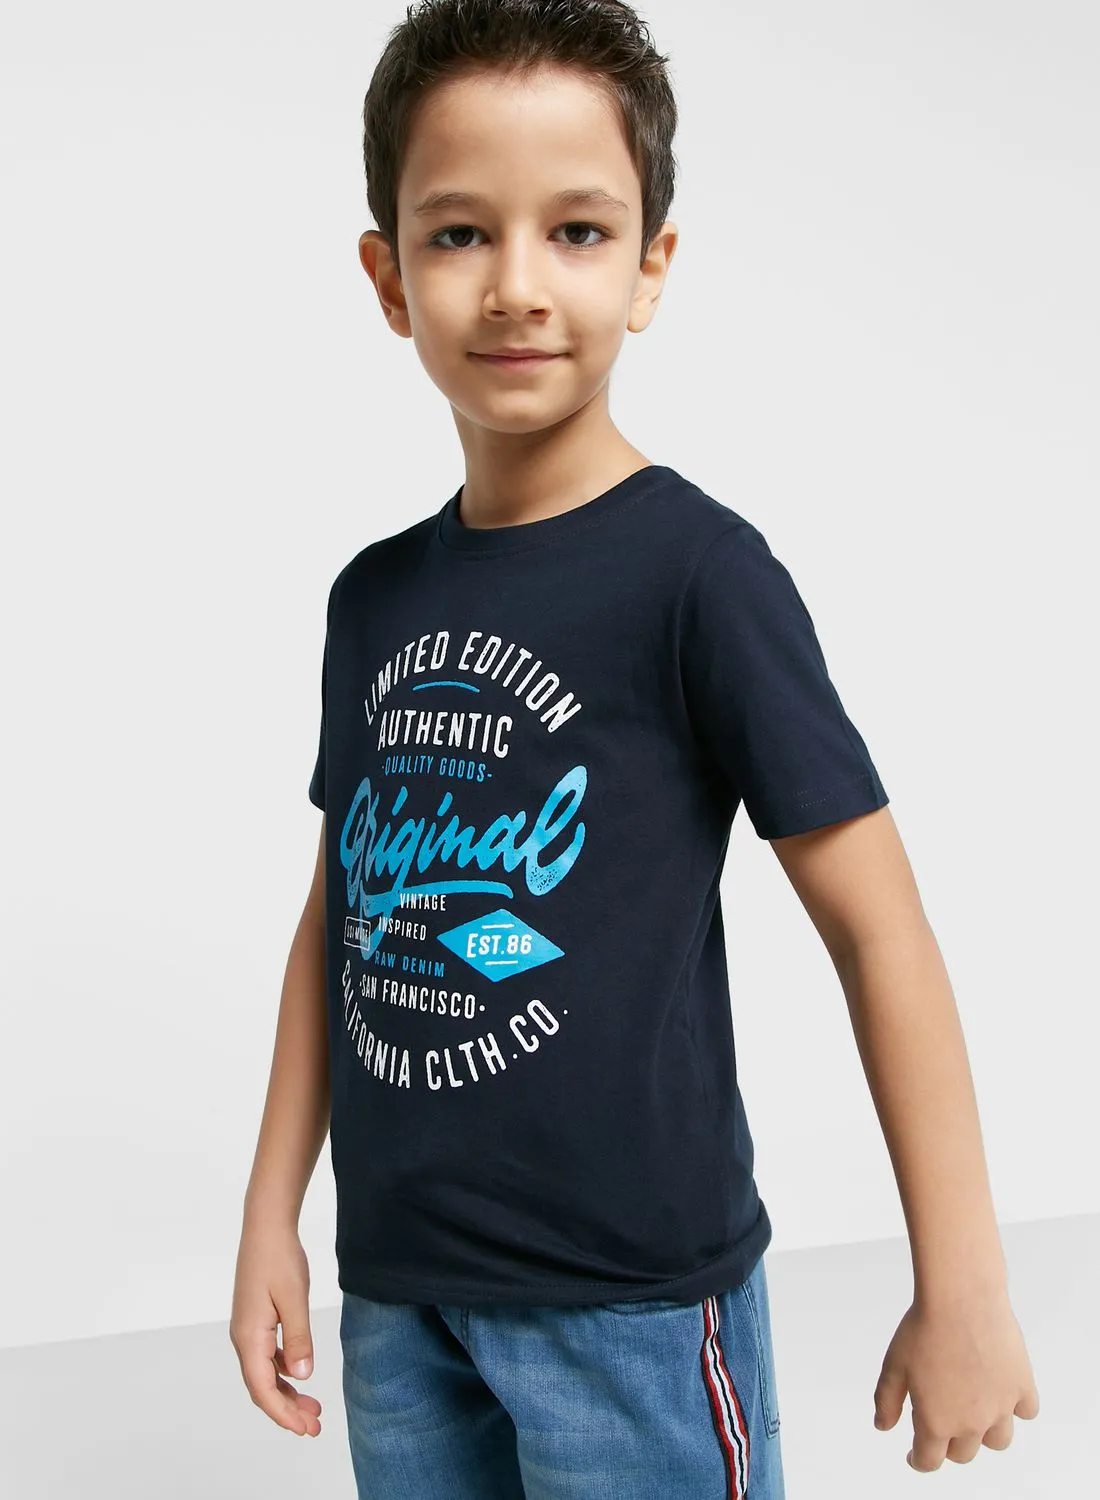 Pinata Text Printed T-Shirt For Boys